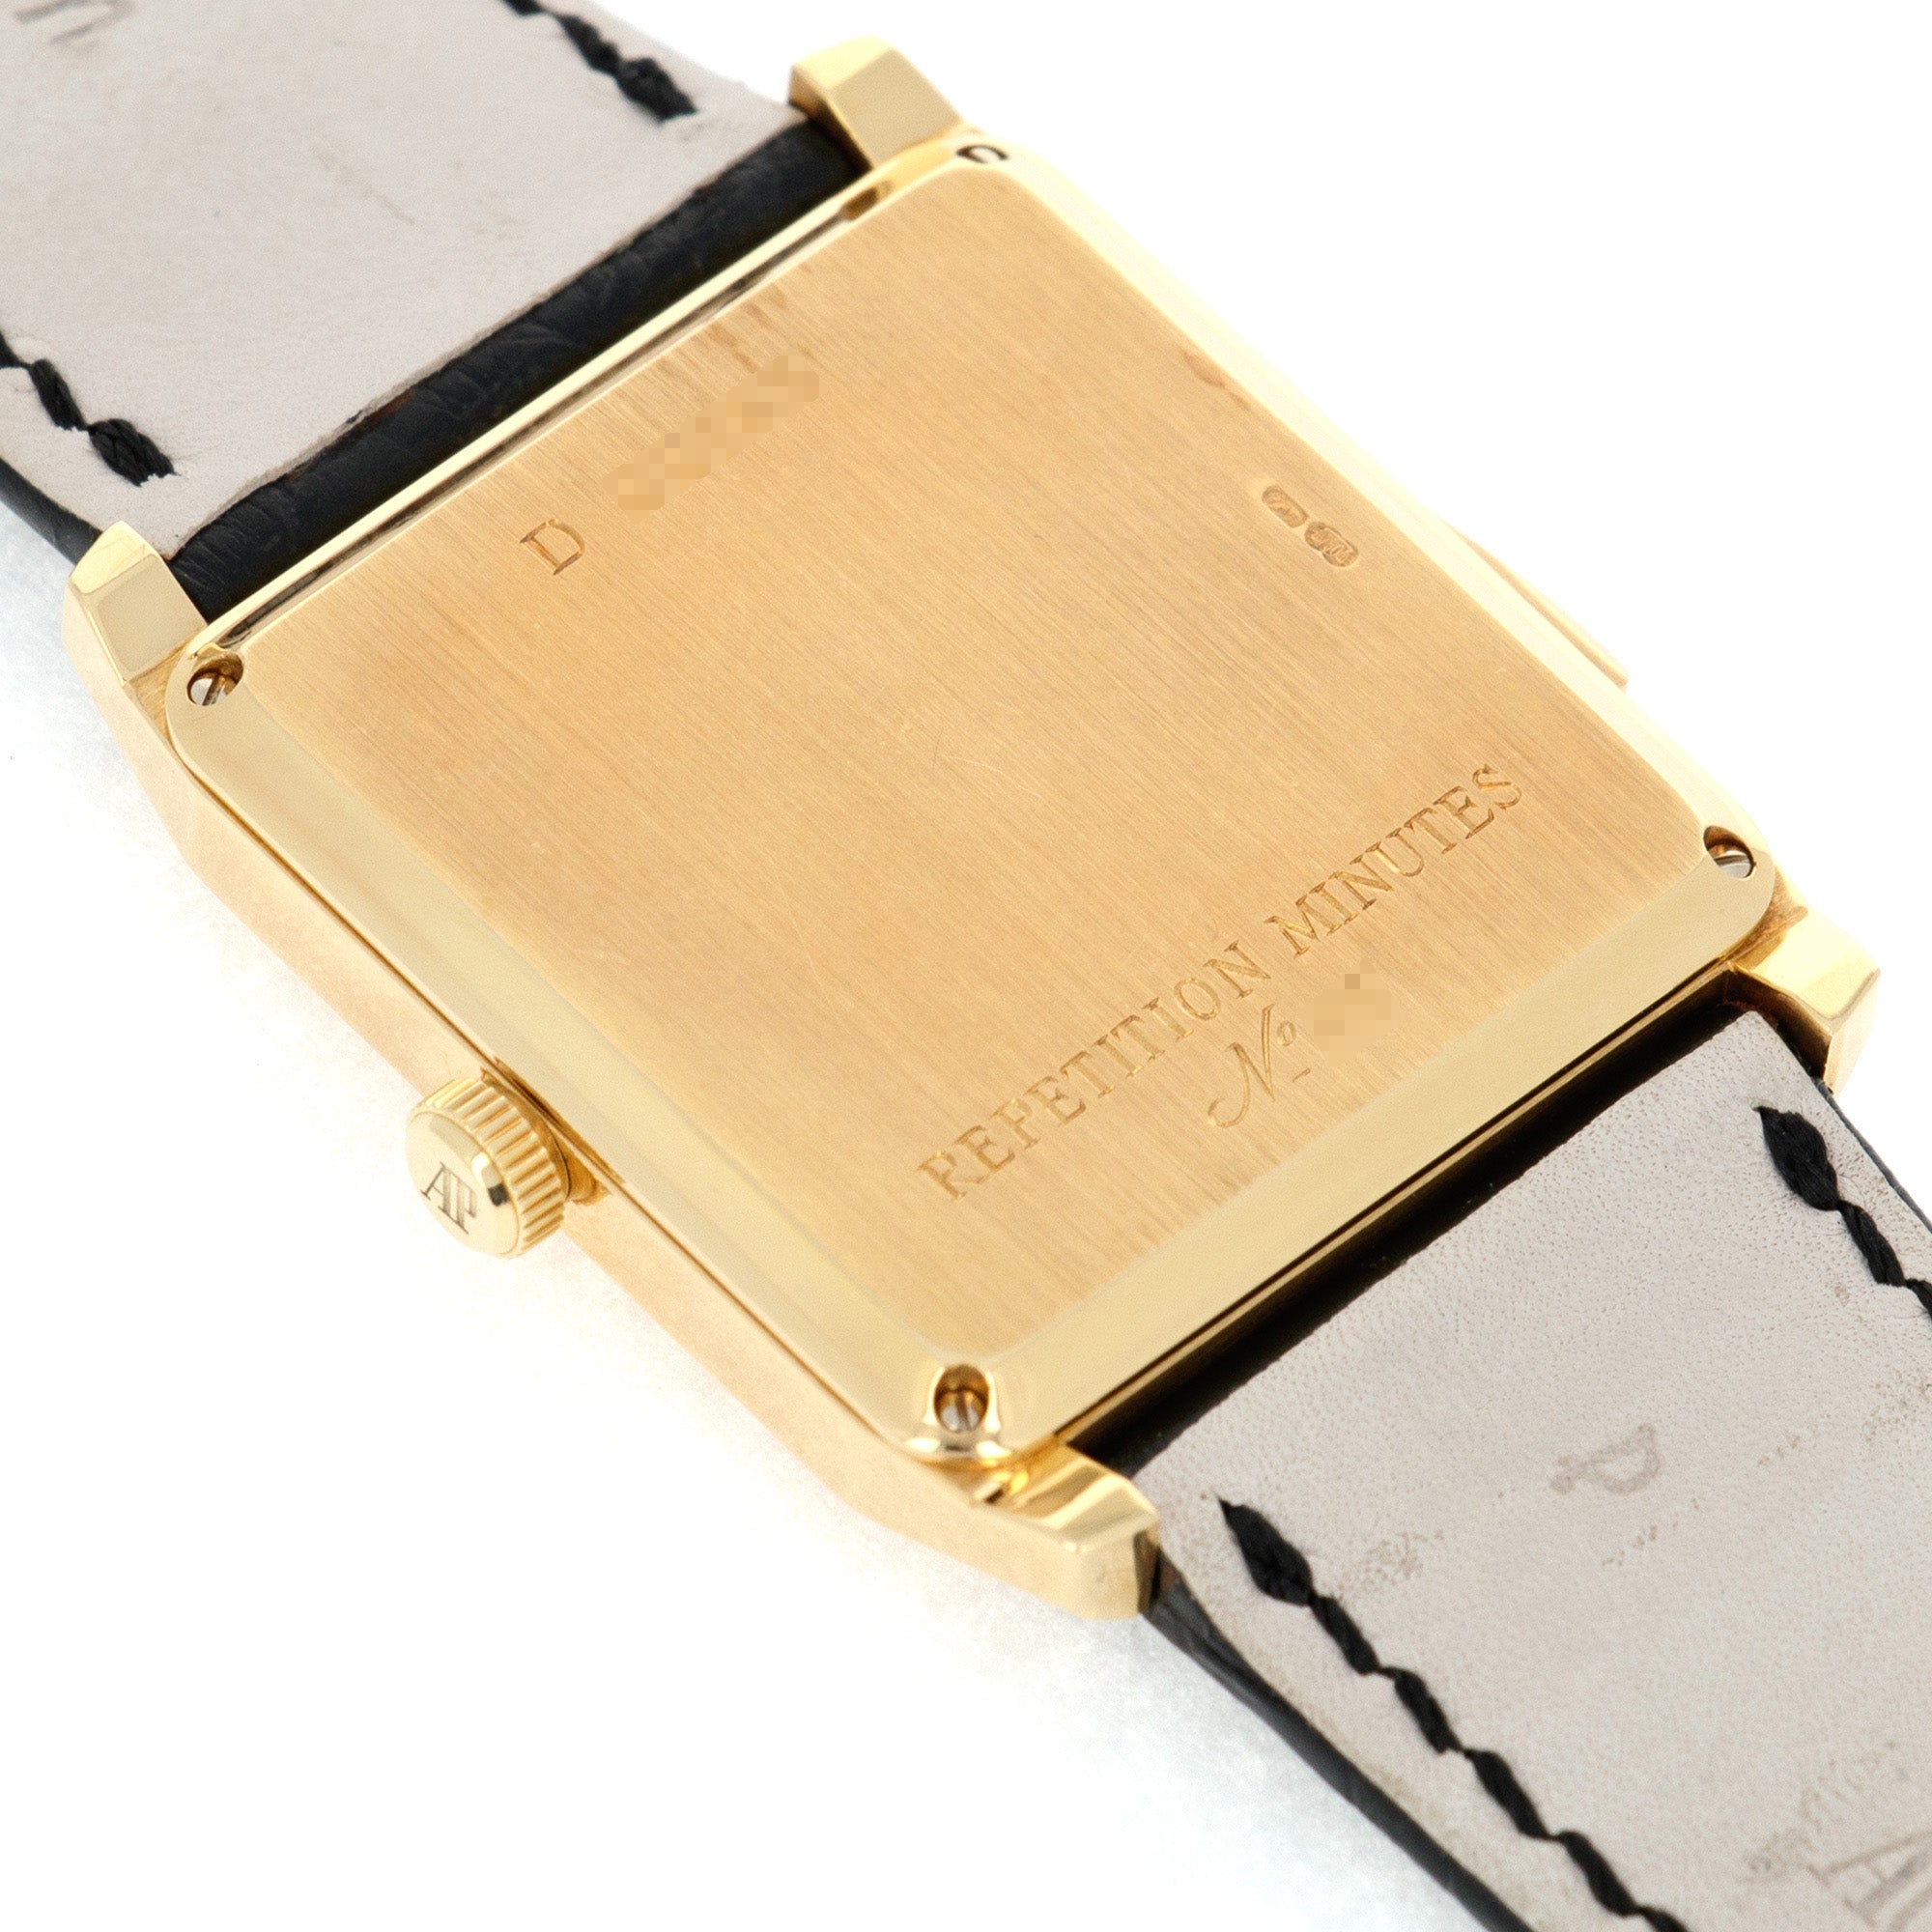 Audemars Piguet - Audemars Piguet Yellow Gold Jump Hour Repeater Ref. 25723 - The Keystone Watches